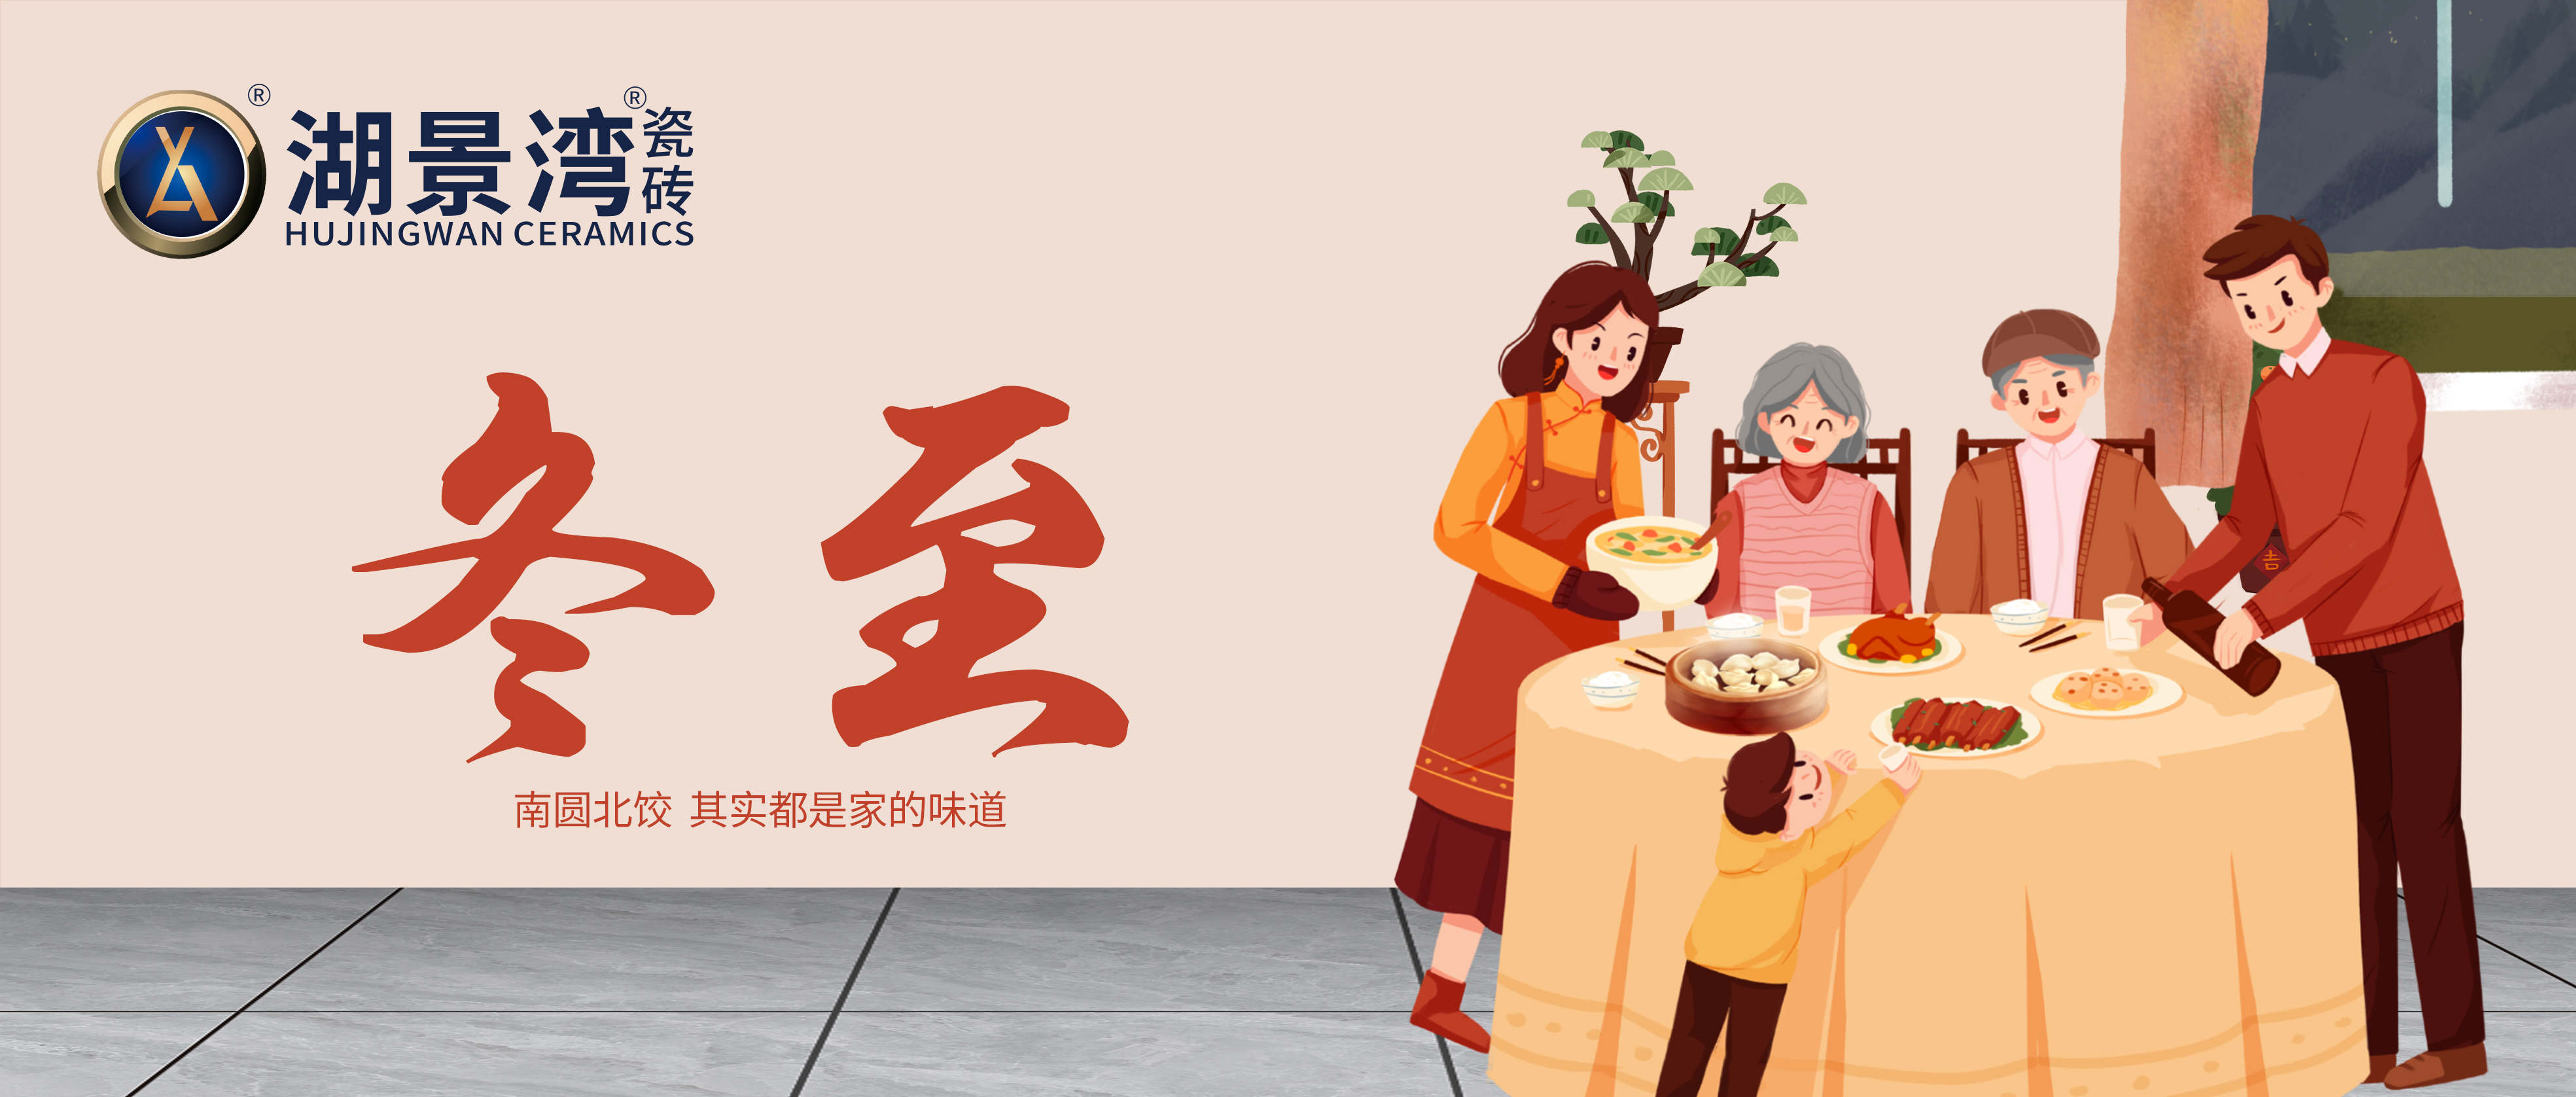 冬至 | 饺子鼓，汤圆甜。湖景湾瓷砖祝大家节日快乐！